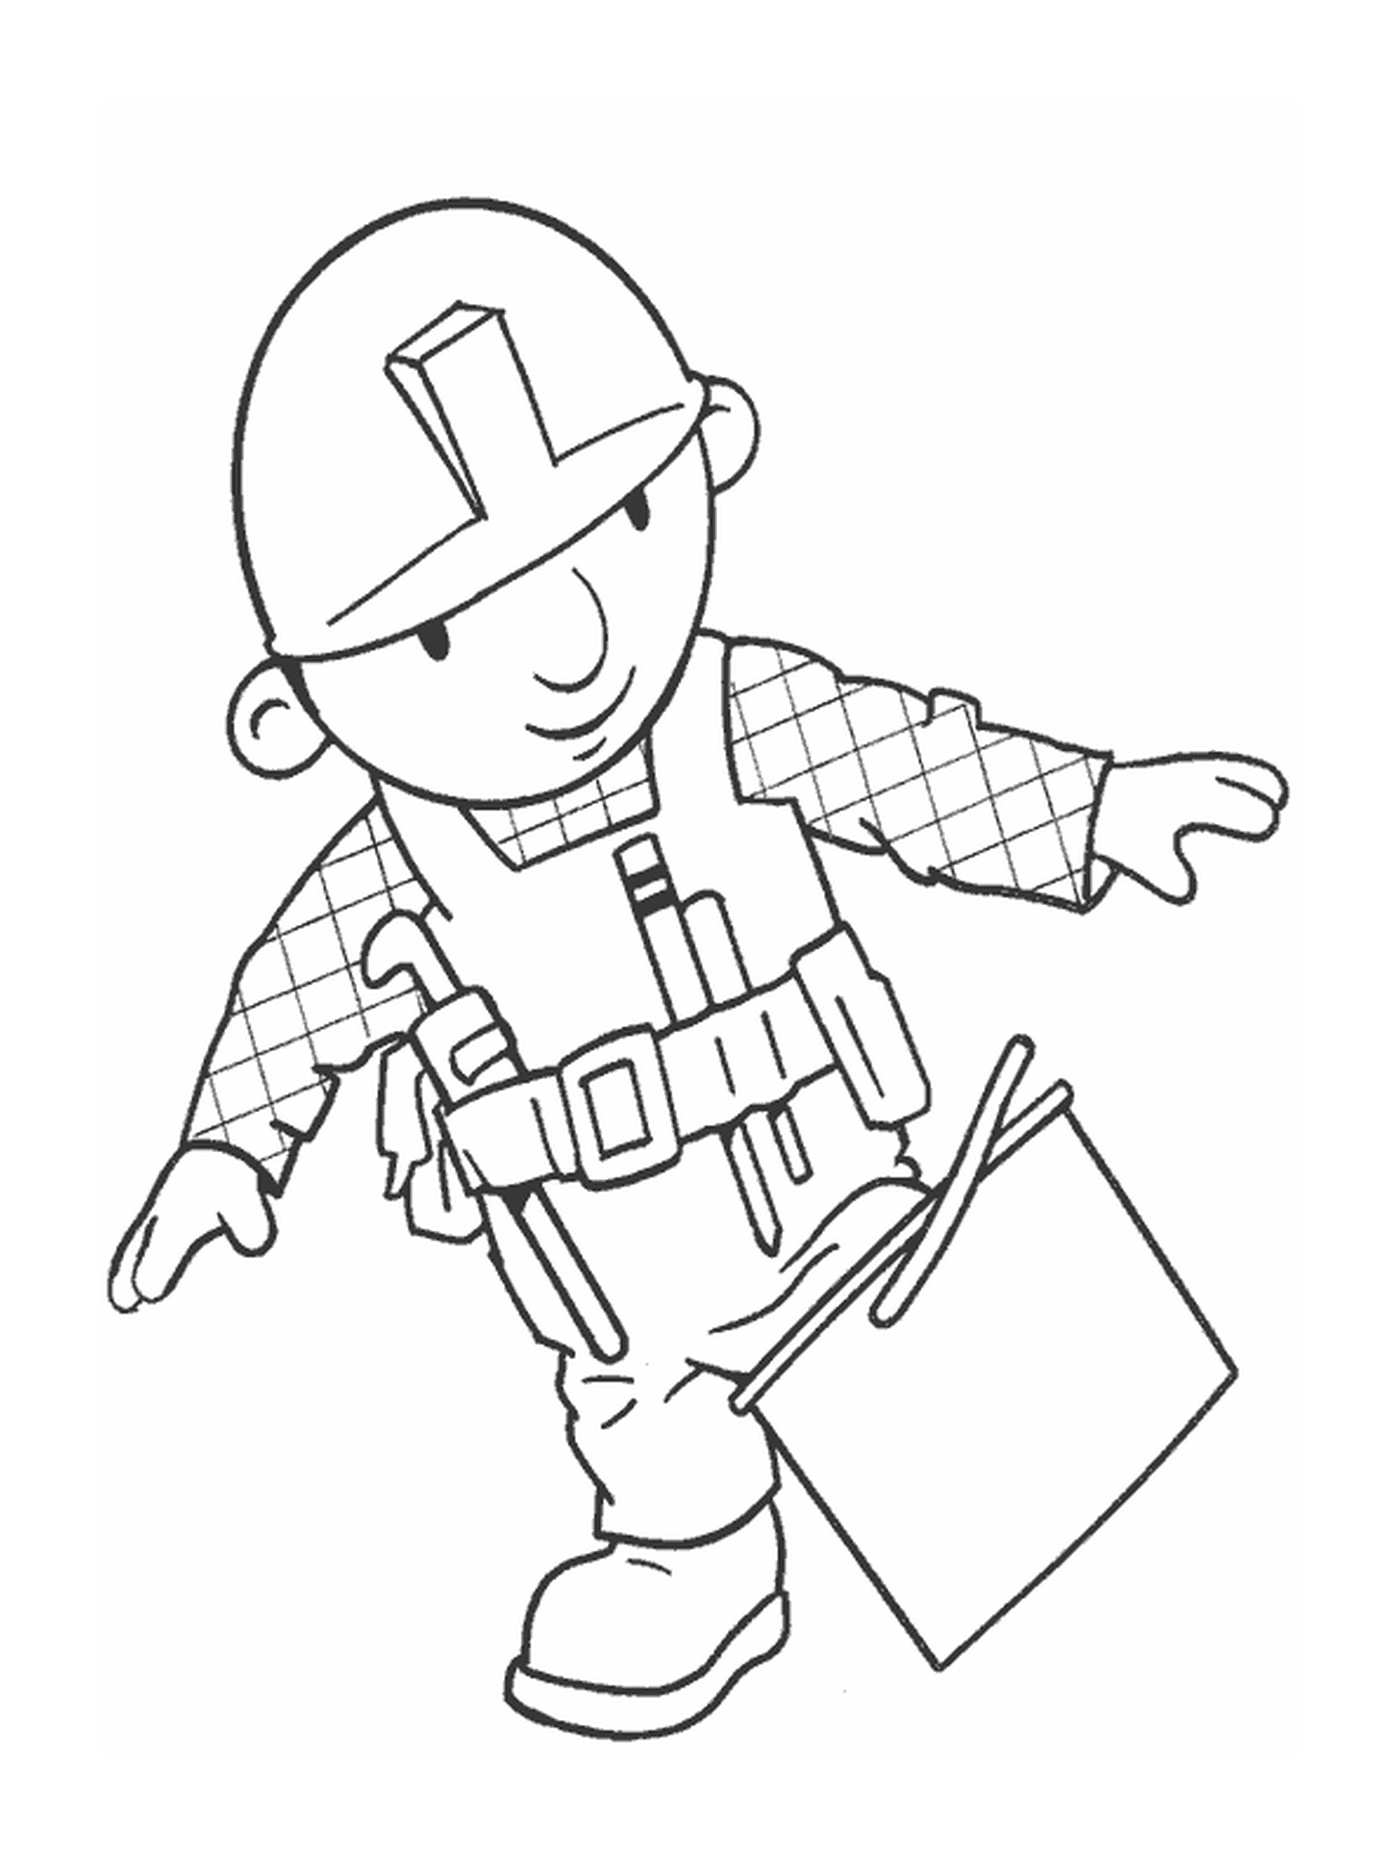  A man wearing a construction helmet 